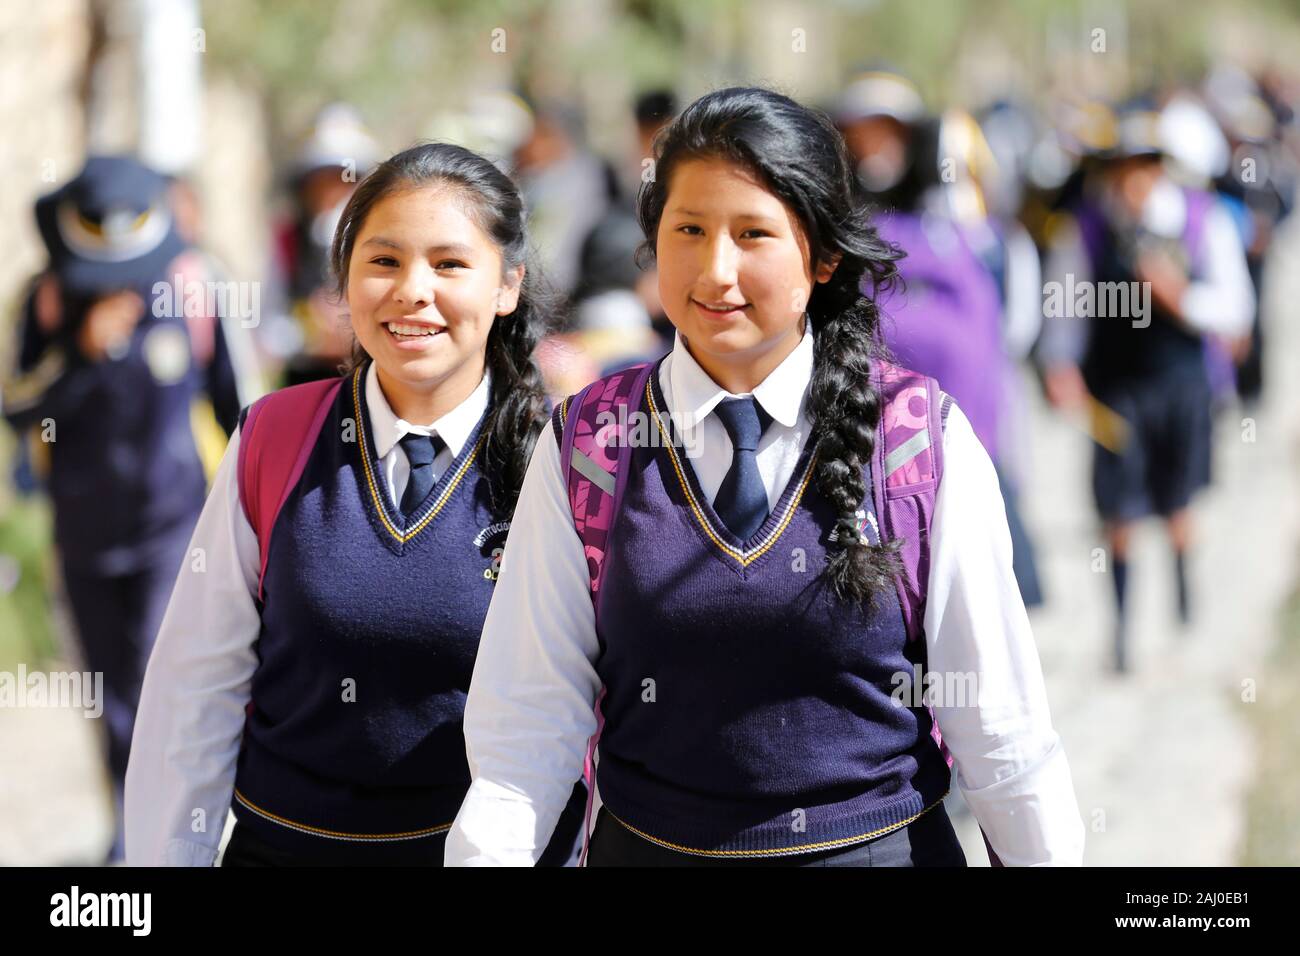 School children in uniform, Peru, Andes region Stock Photo